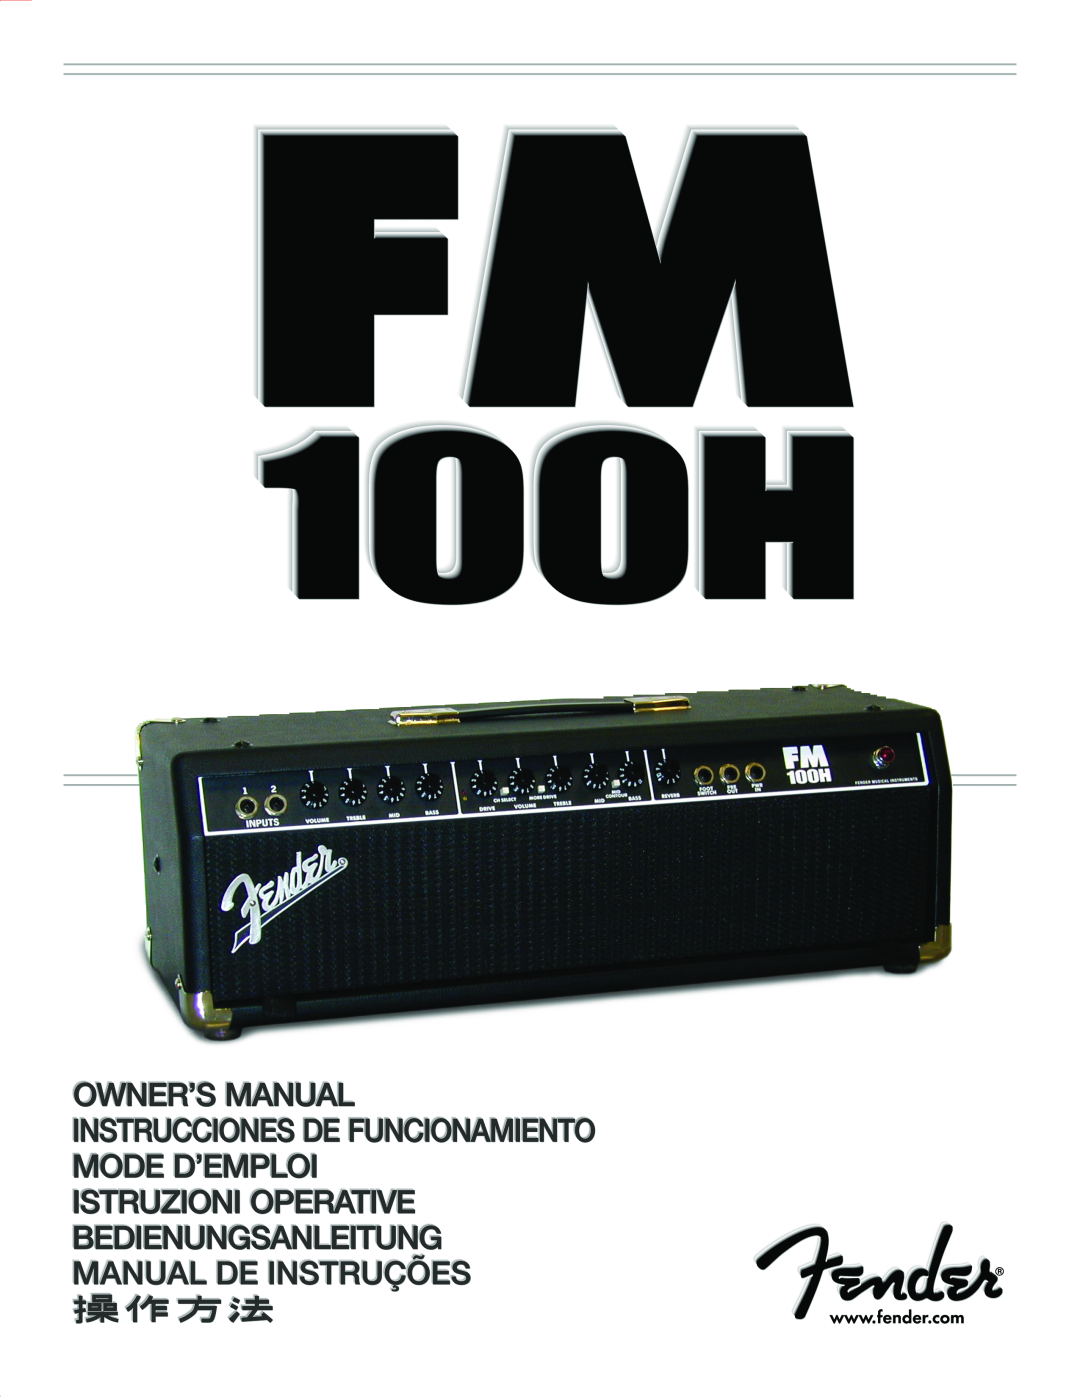 Fender 100H, 160 manual 